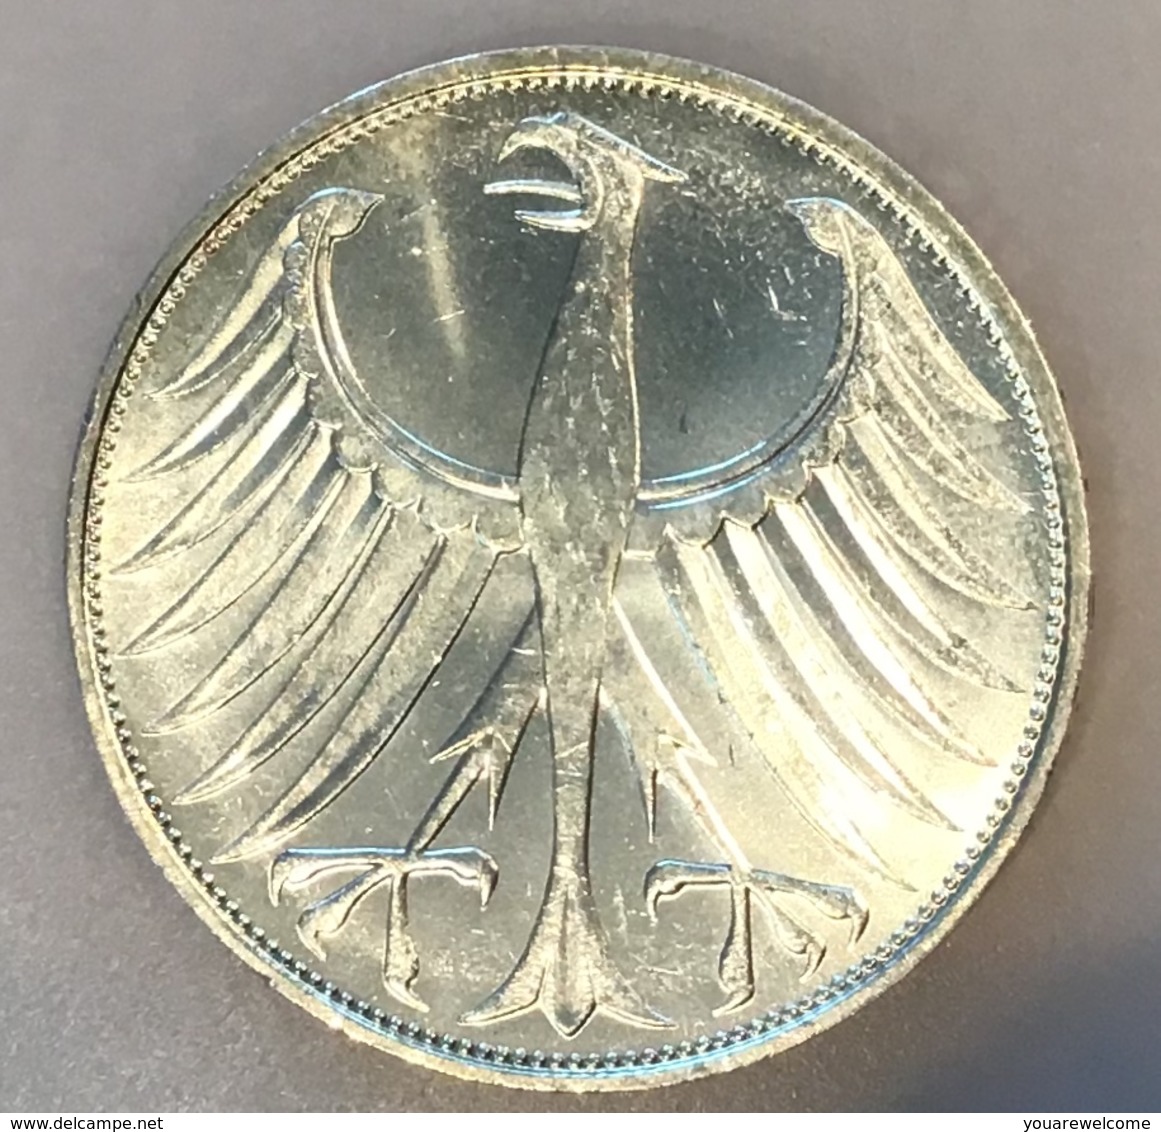 BRD 5 Mark 1973 J  Stg TOP ERHALTUNG + 1973 F Bankfrisch - (Deutschland Münze monnaie coin Germany Allemagne